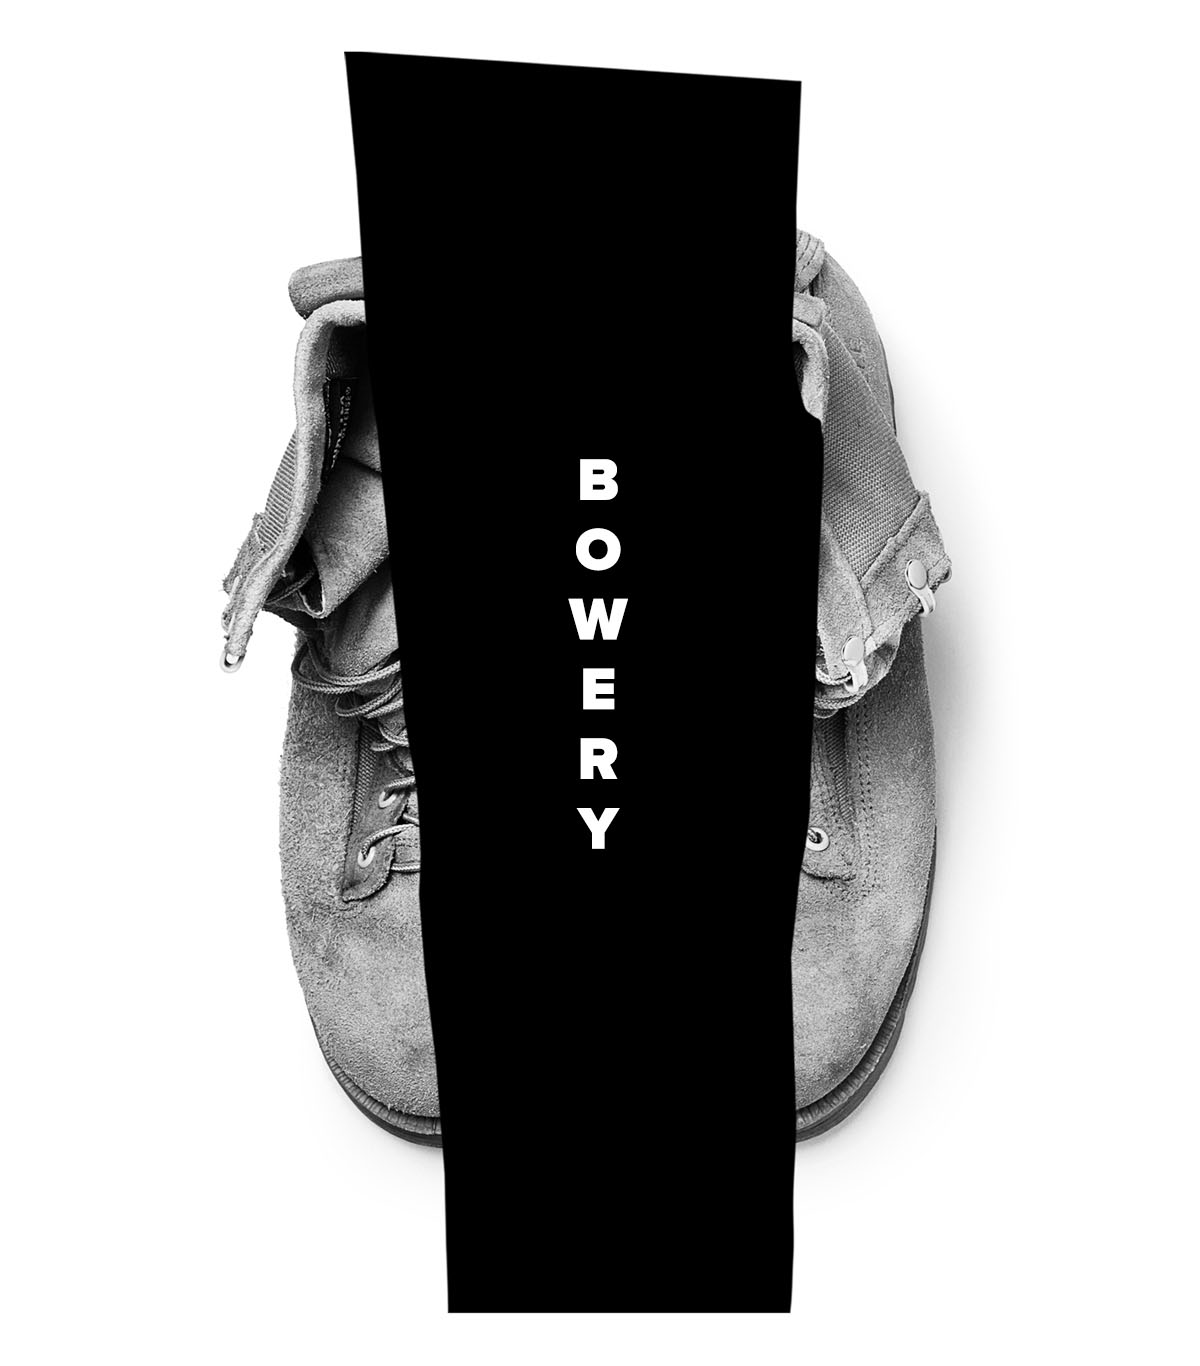 Bowery Shoe Drive 2019